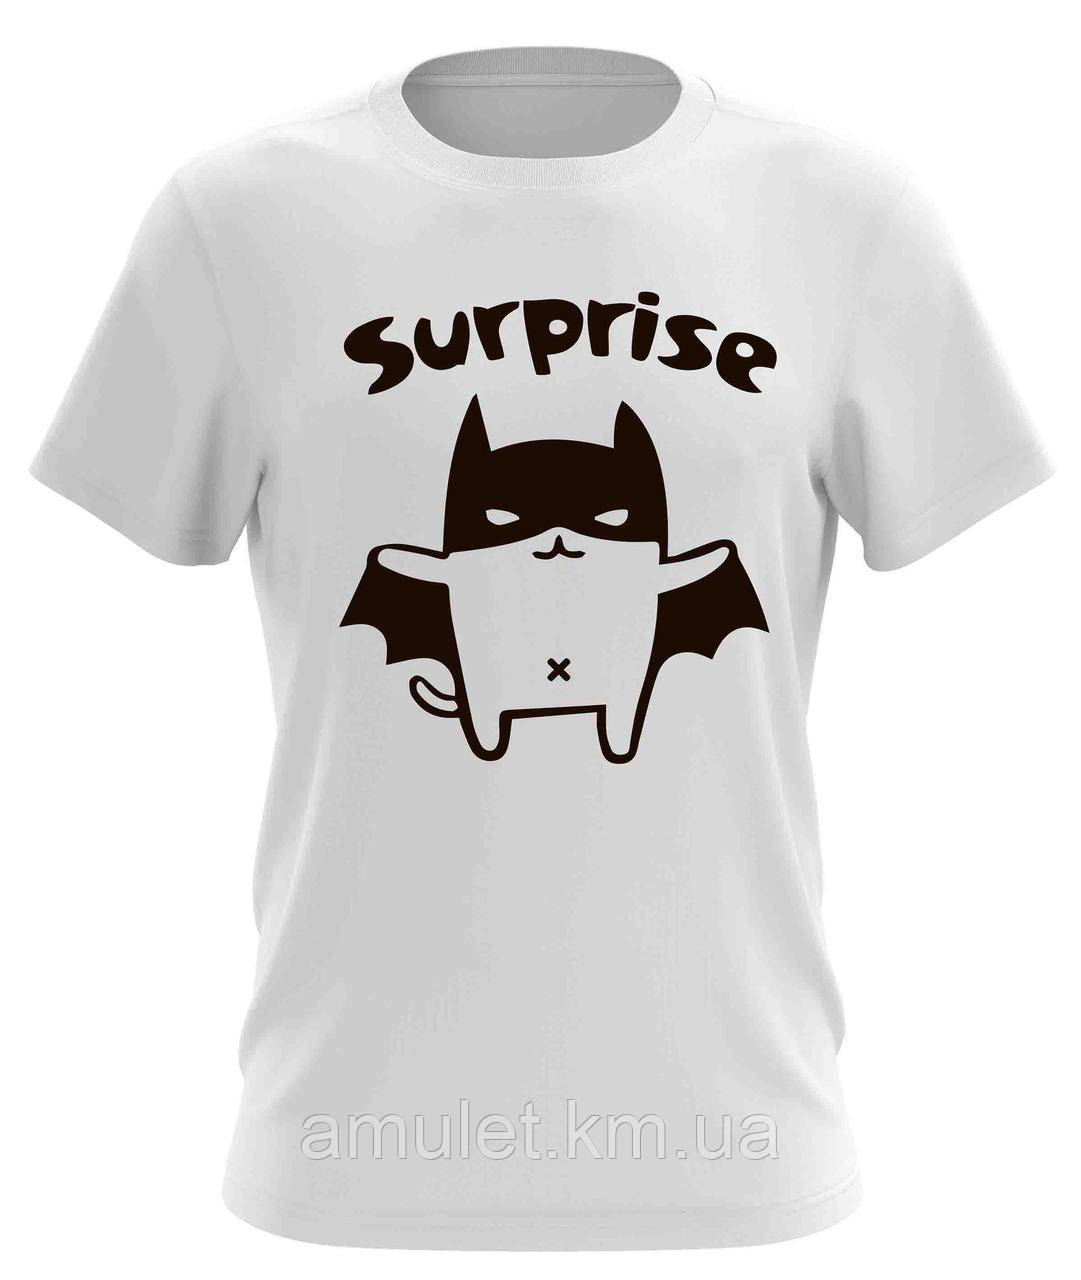 Оригинальная мужская футболка  "Surprise"